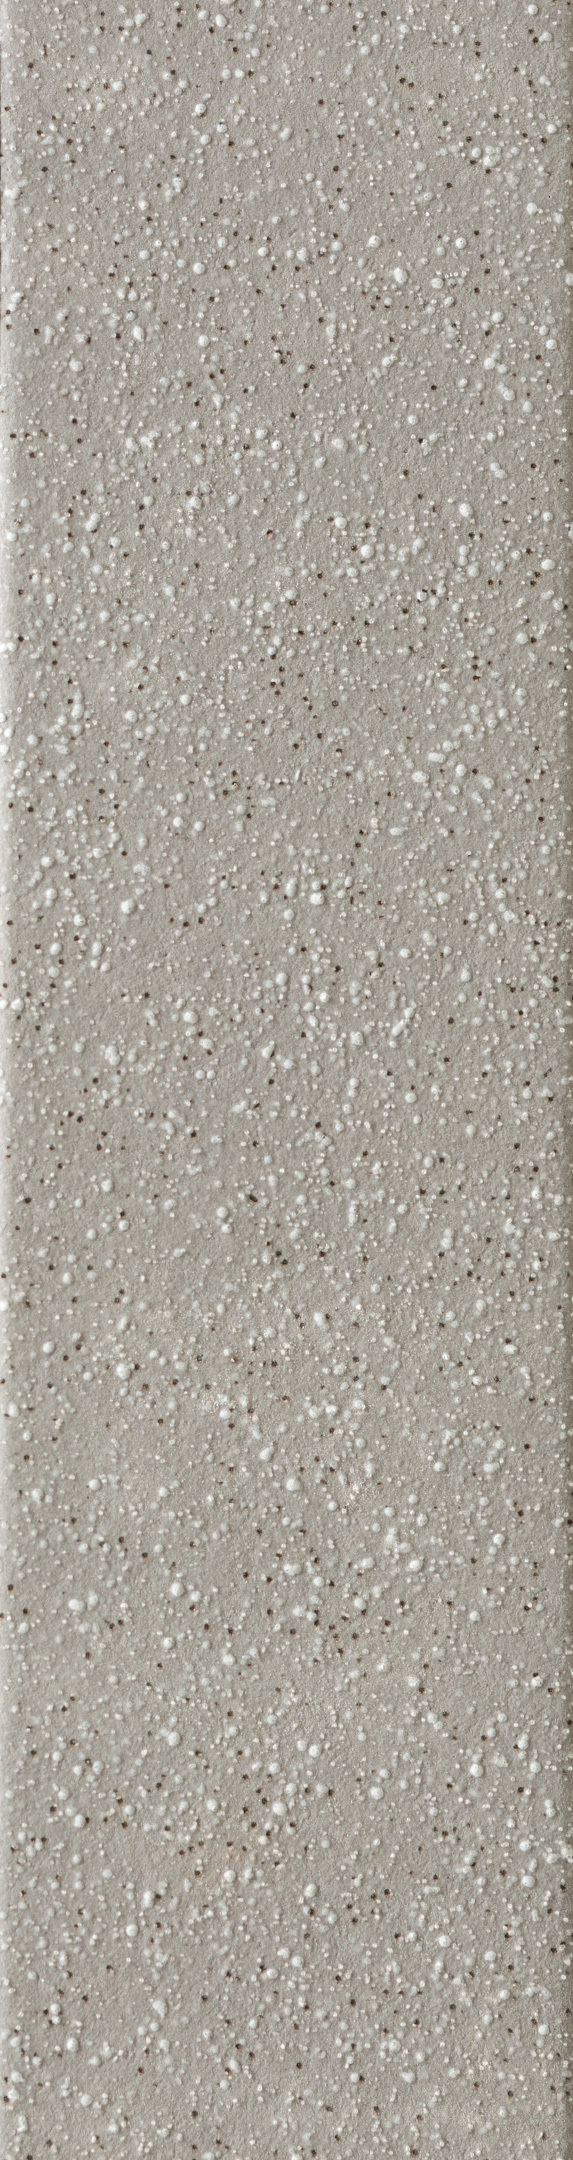 фото Клинкерная плитка керамин мичиган 1 серая 245х65х7 мм (34 шт.=0,54 кв.м)